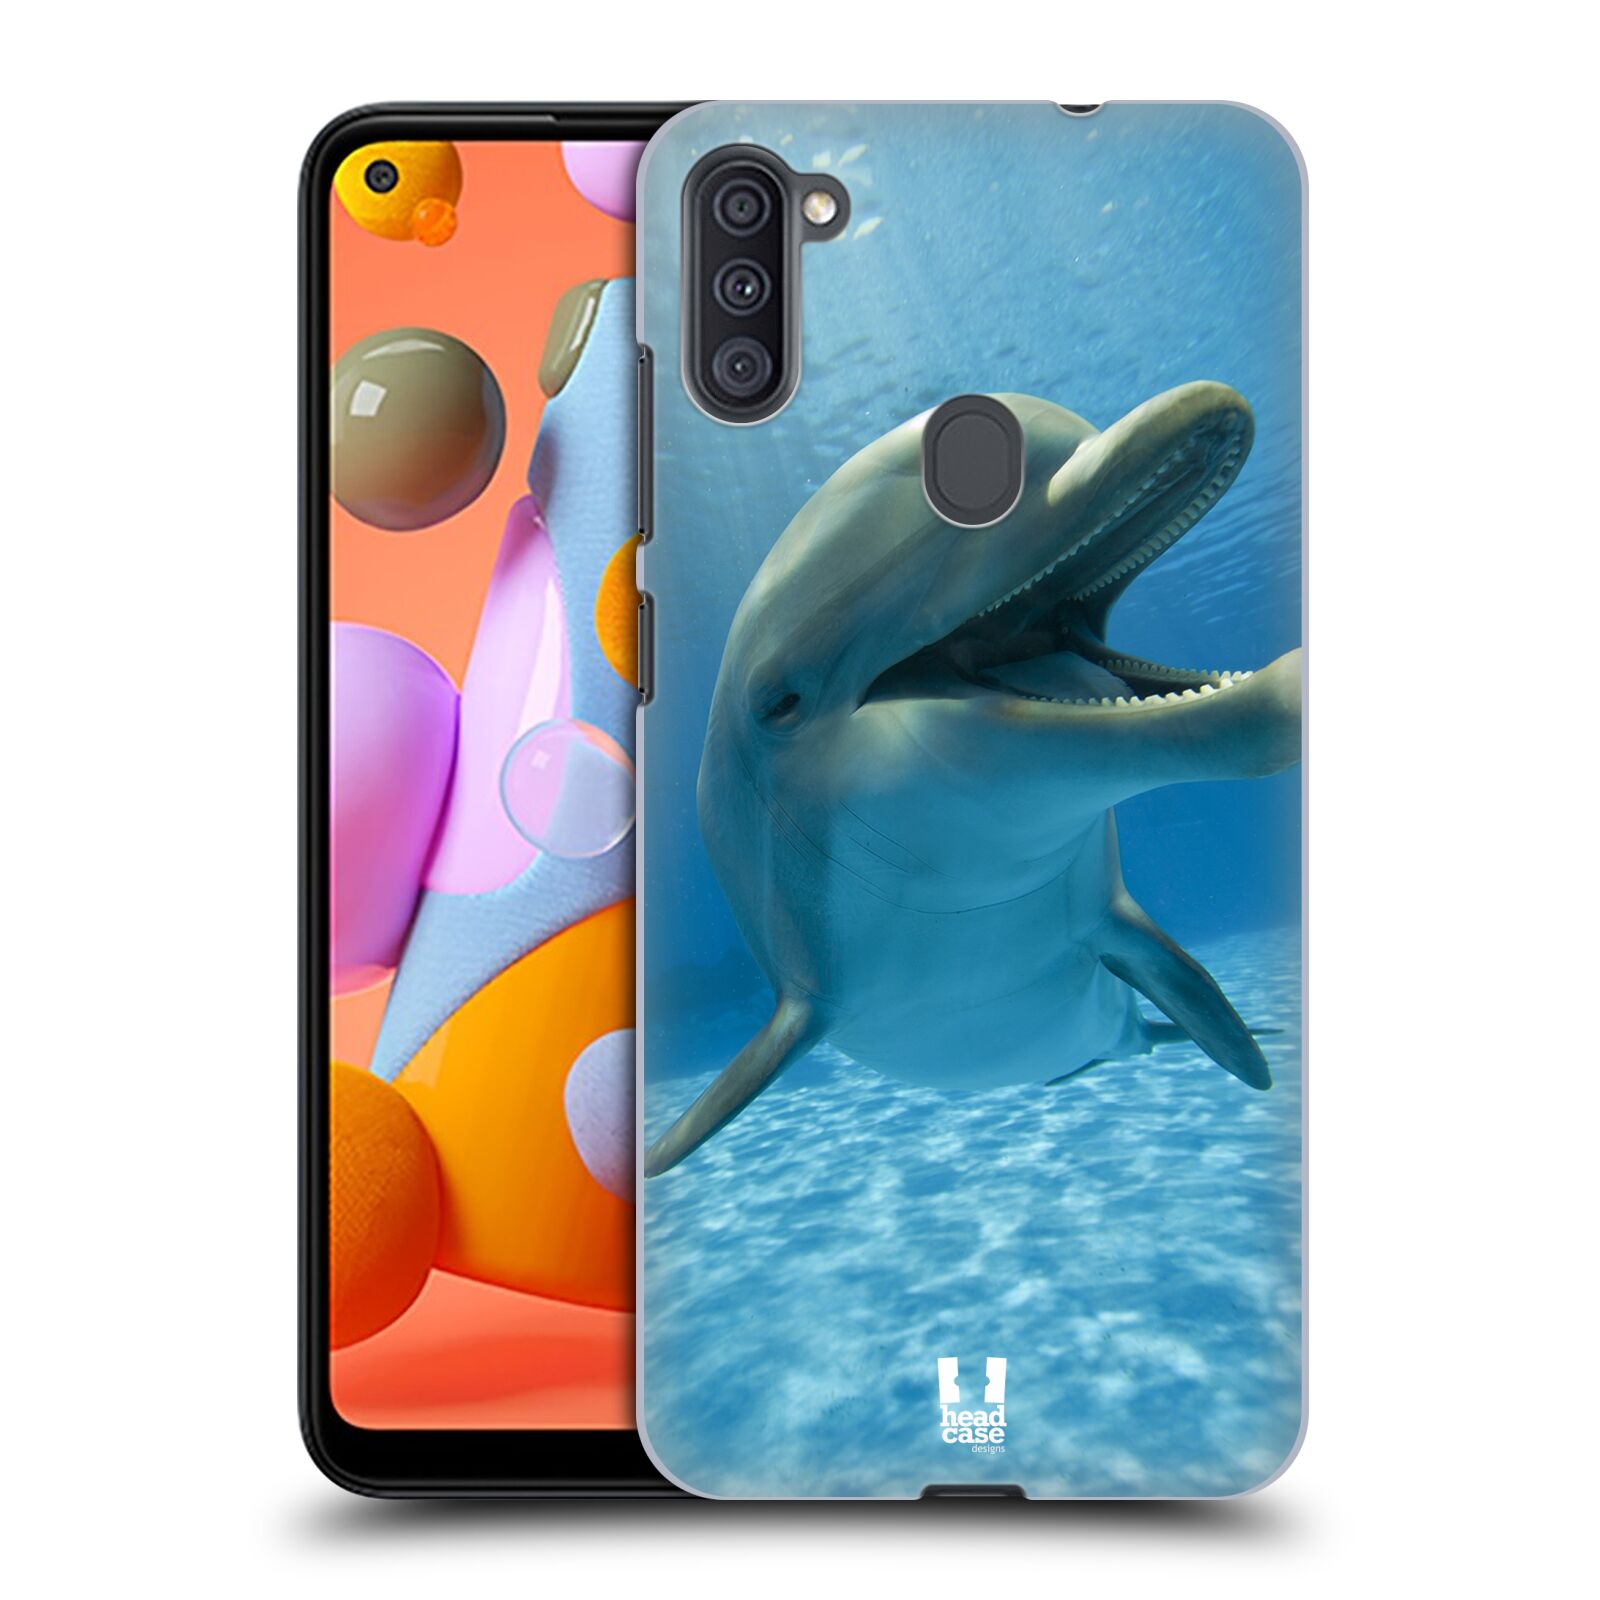 Zadní obal pro mobil Samsung Galaxy A11 - HEAD CASE - Svět zvířat delfín v moři